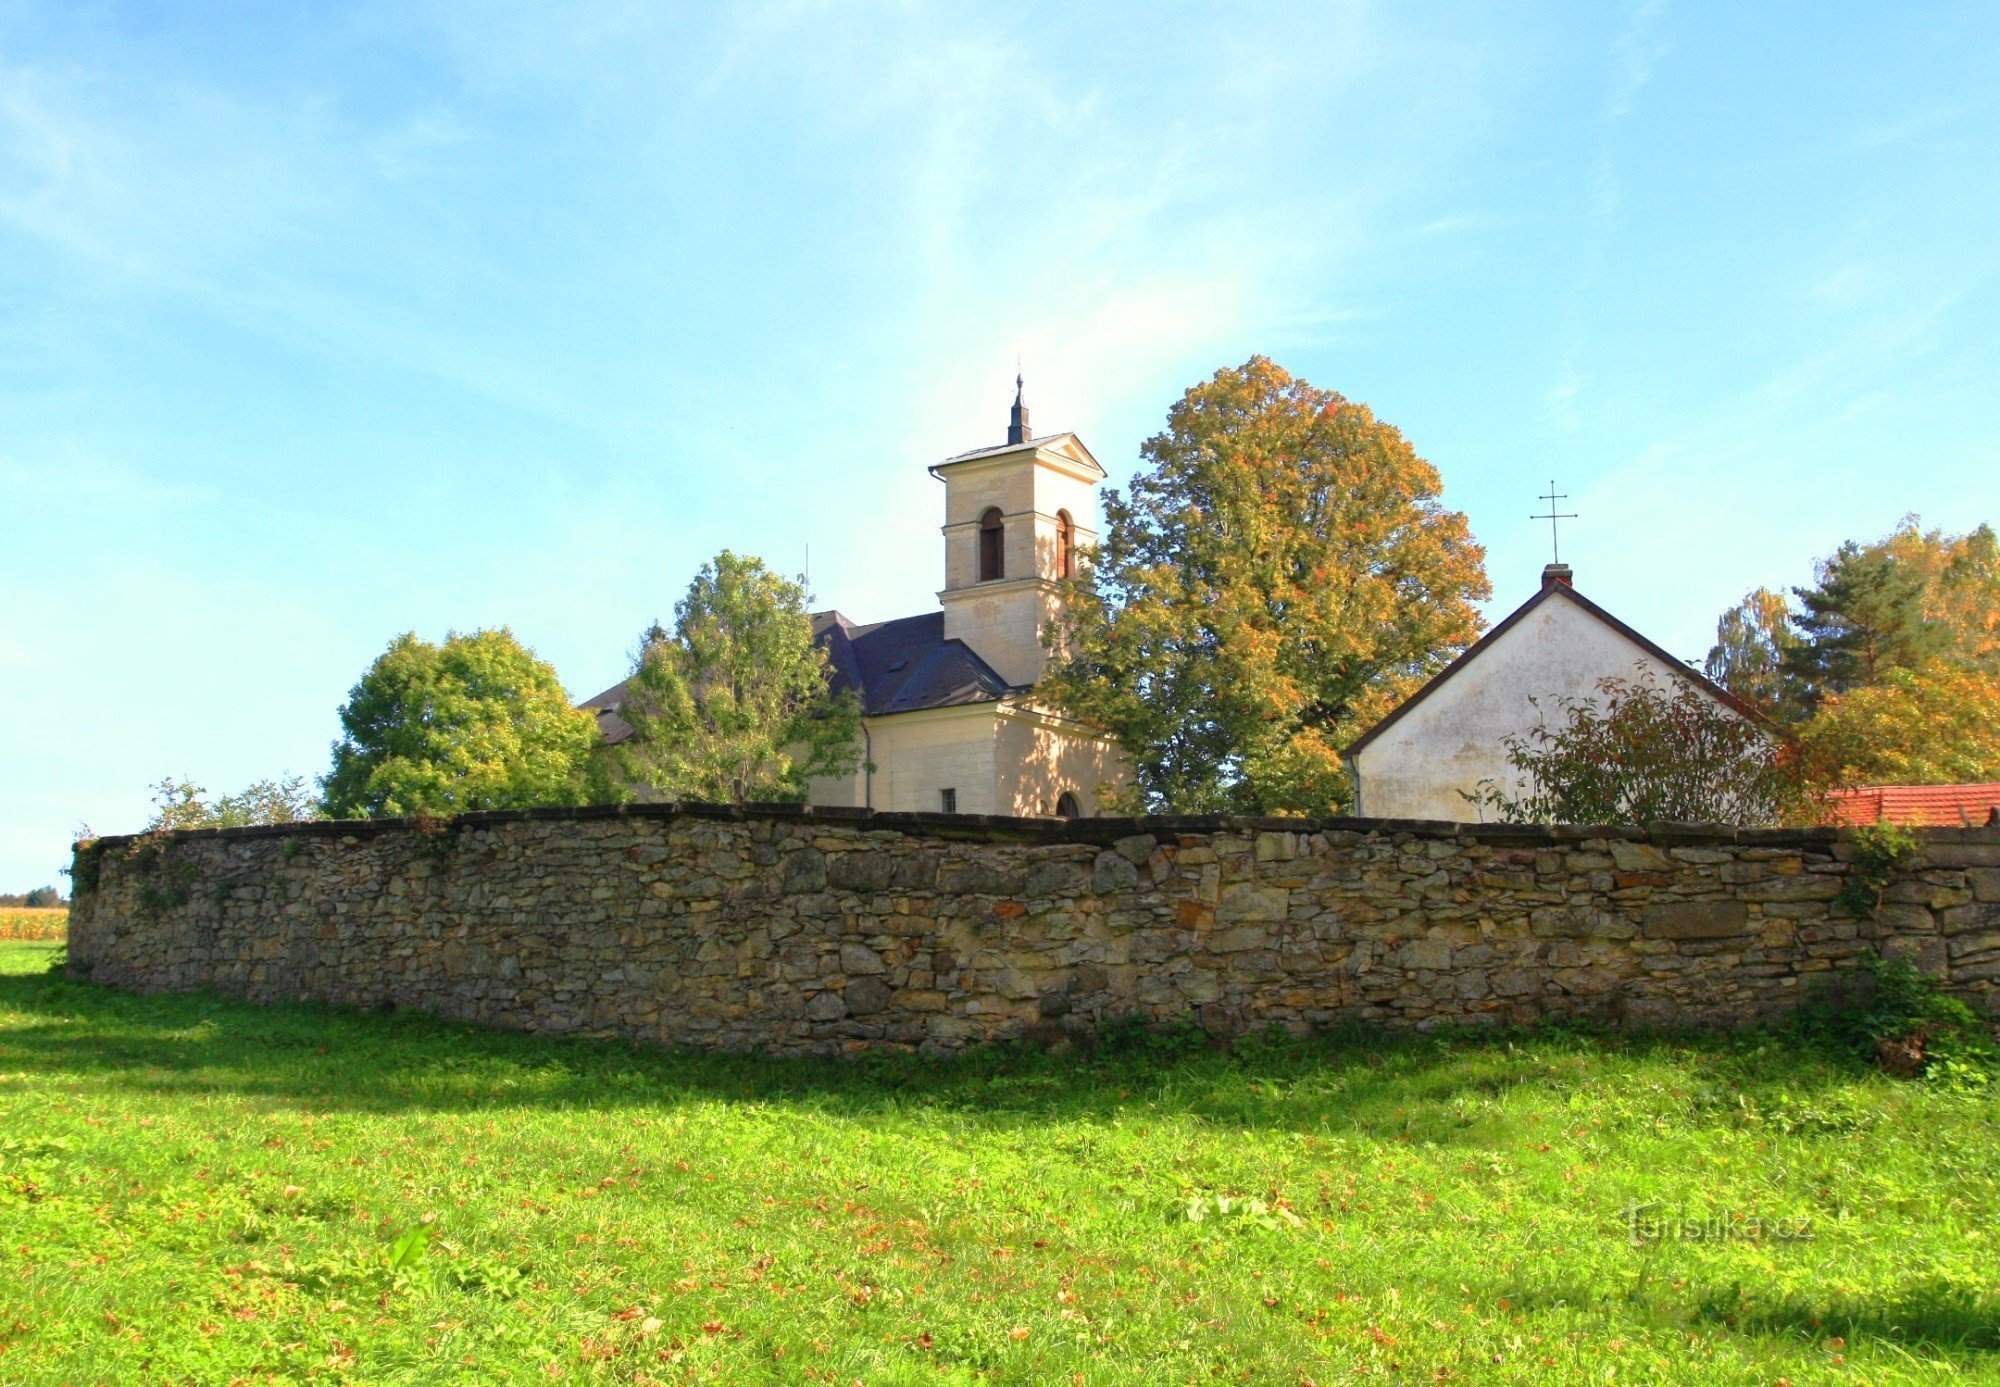 Nhà thờ với nhà nguyện và nghĩa trang